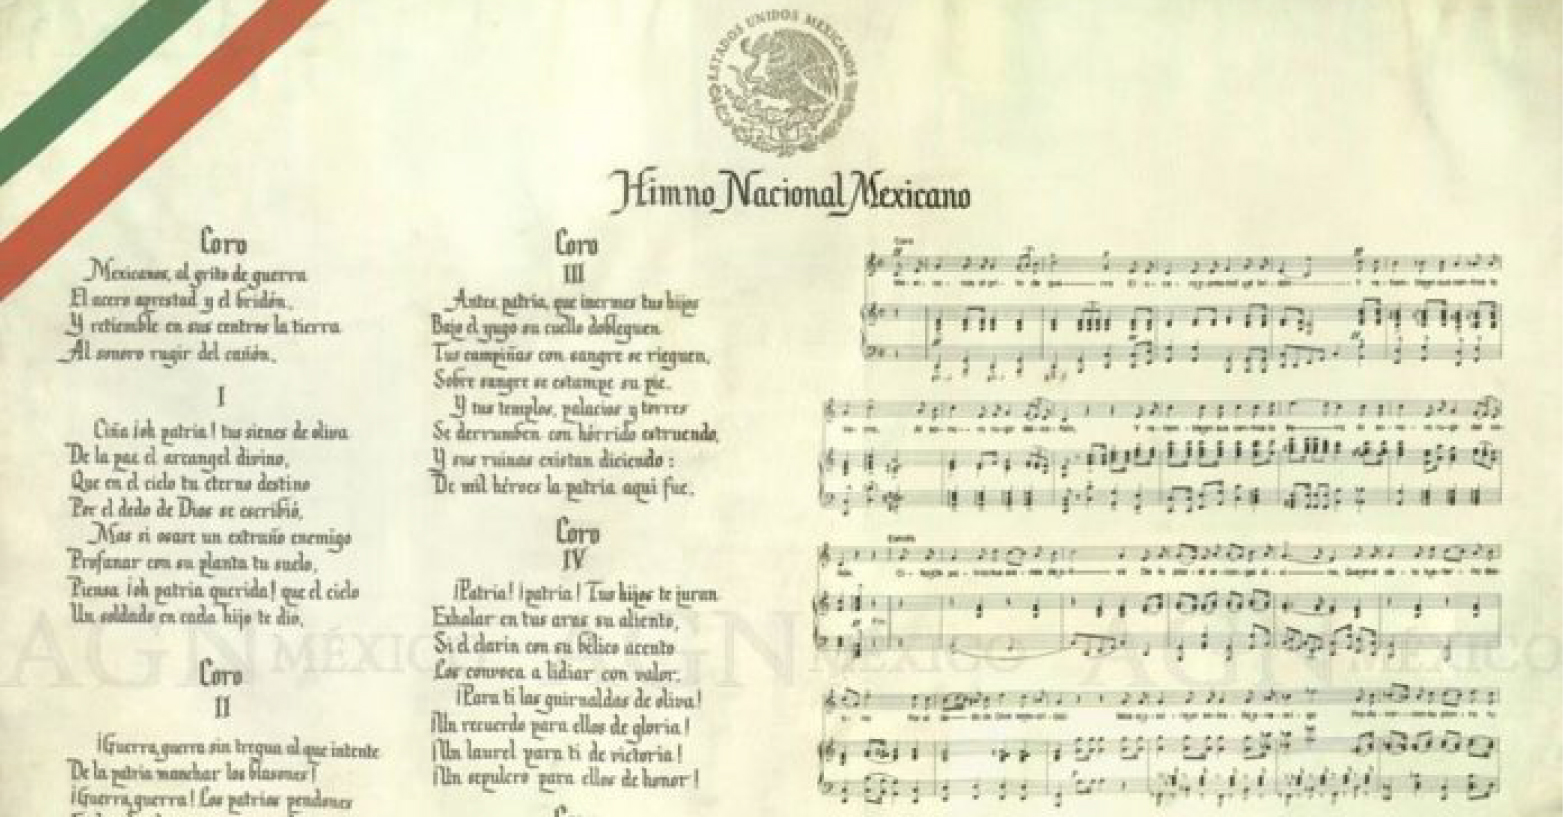 Conmemoramos que hace 76 años se emitió el decreto por el que se establece la versión oficial de nuestro Himno Nacional